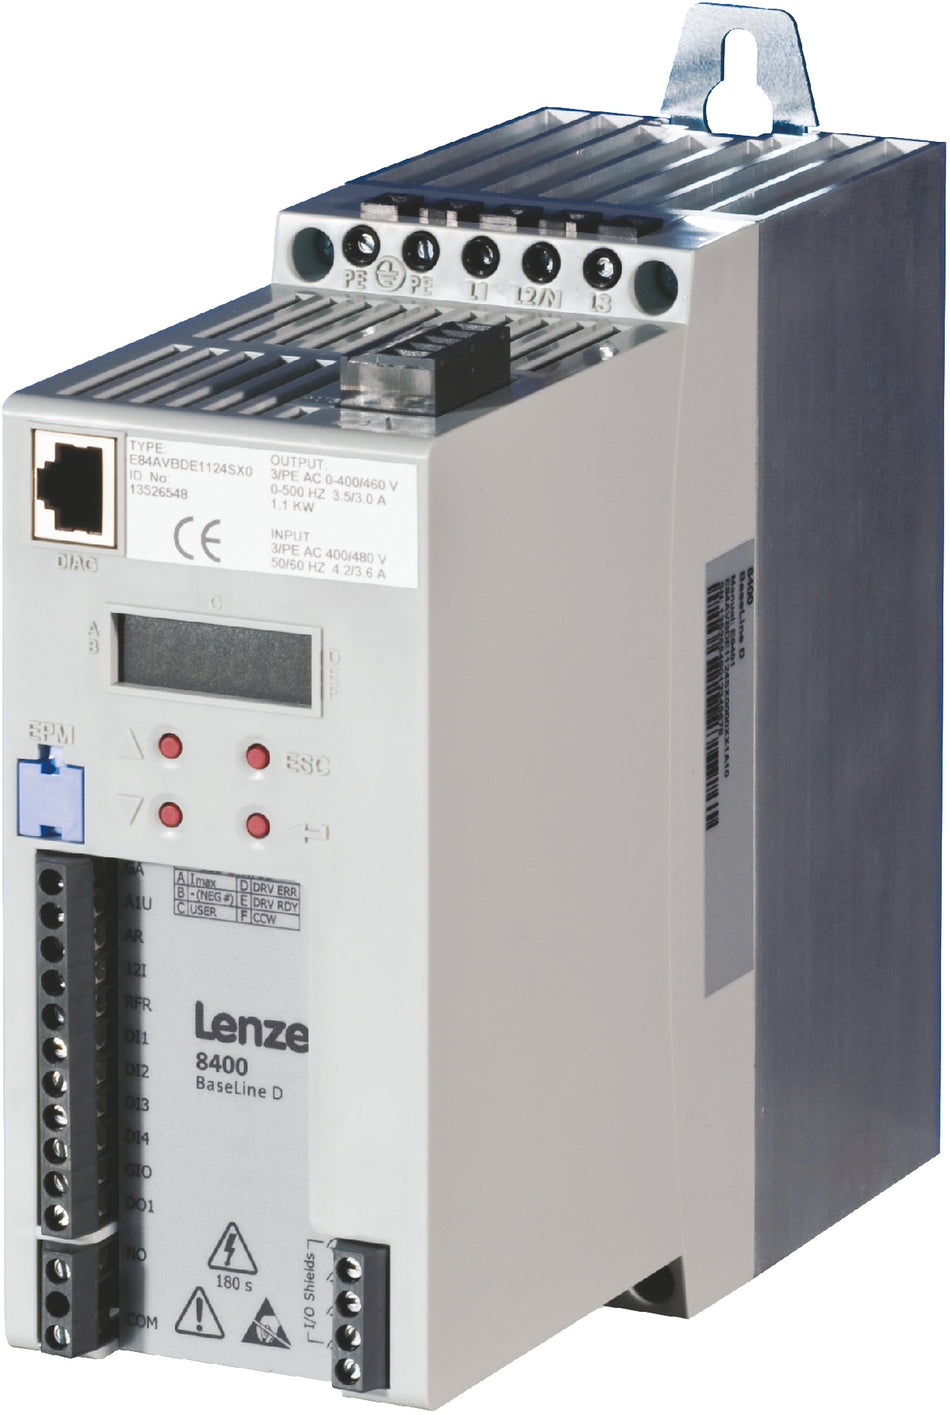 Lenze Inverter Drives 8400 BaseLine - E84AVBDE1124SX2XX2D34 1.1 kW